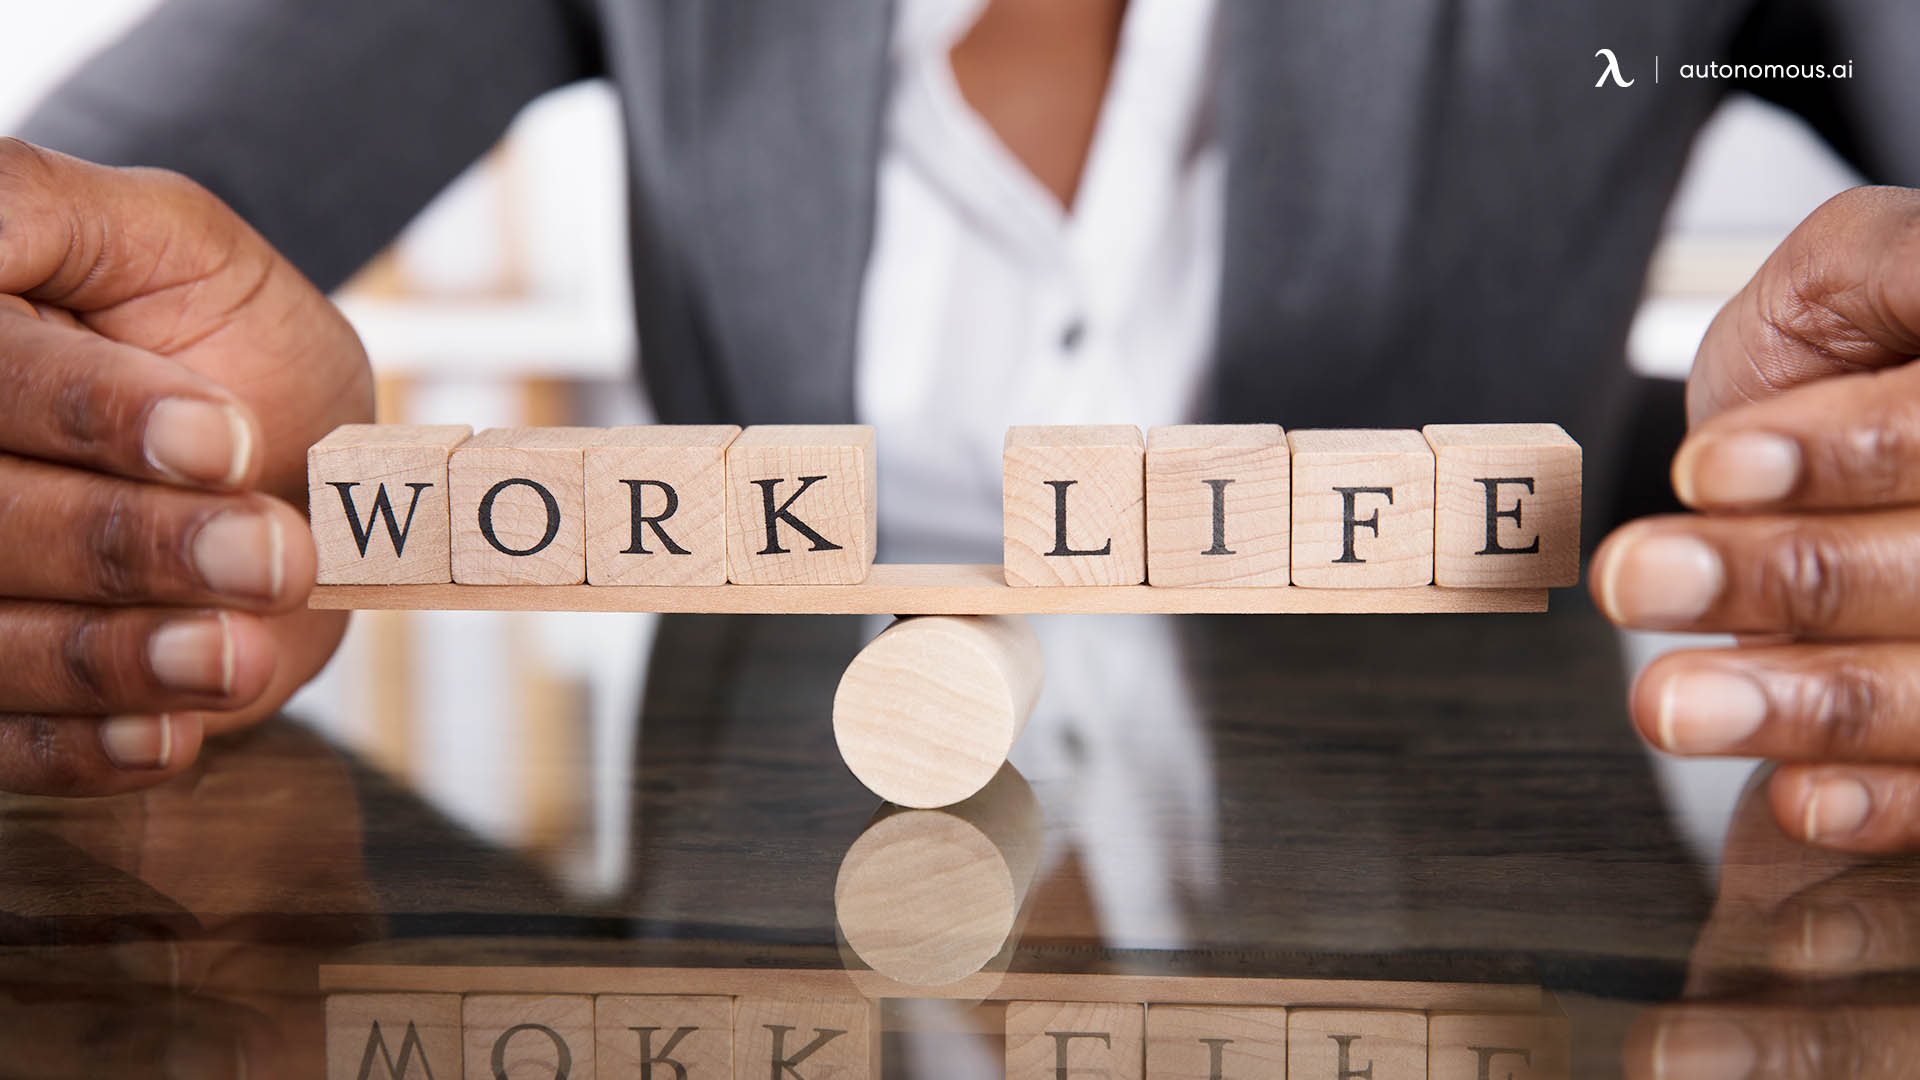 Better Work-life Balance